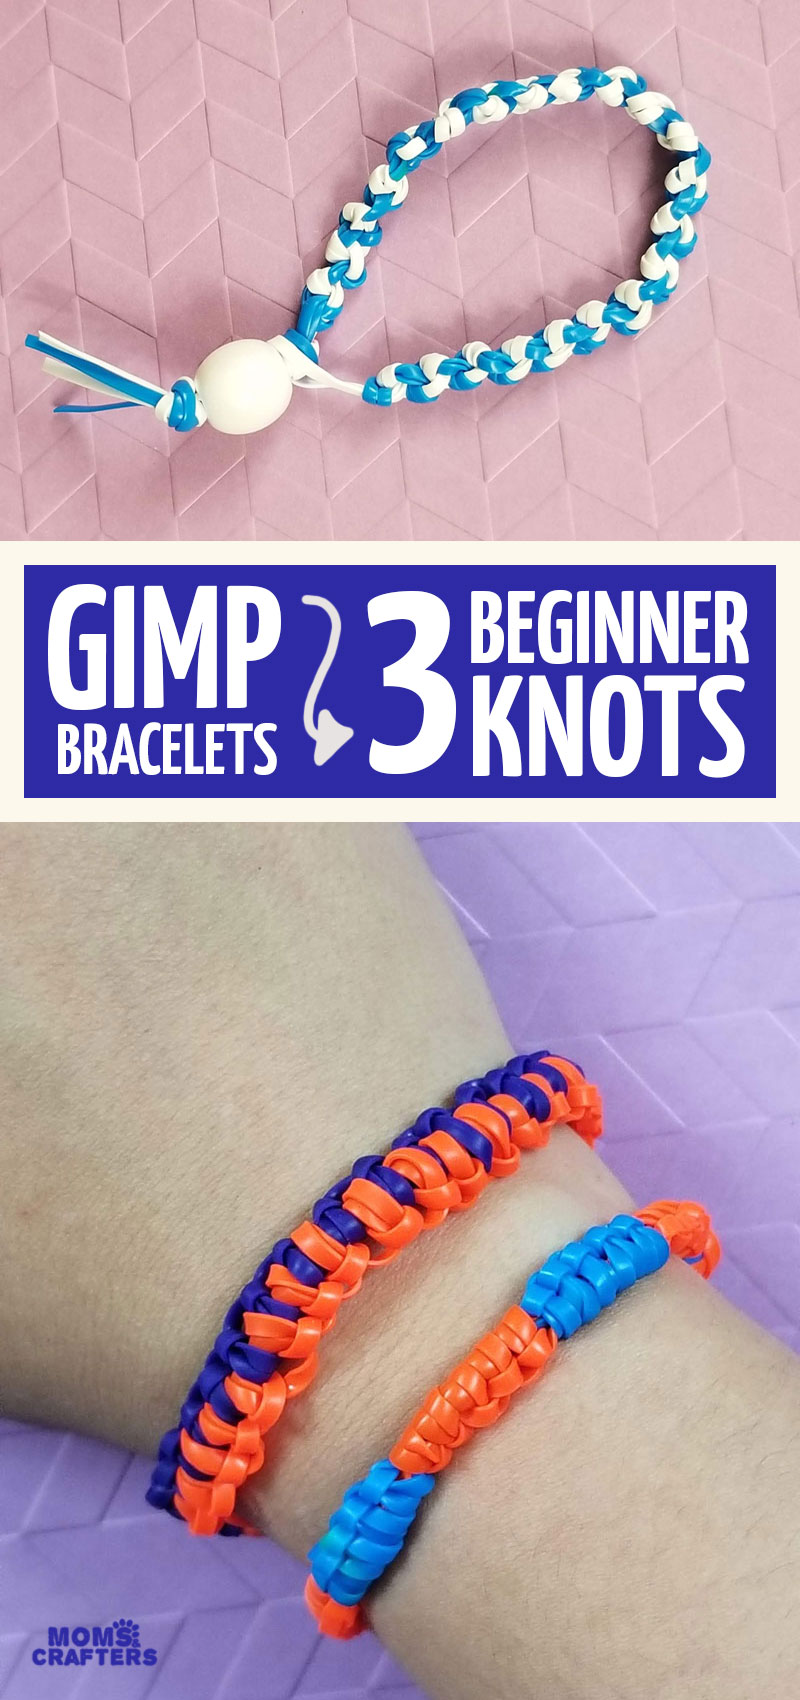 Making bracelets out of gimp! : r/nostalgia